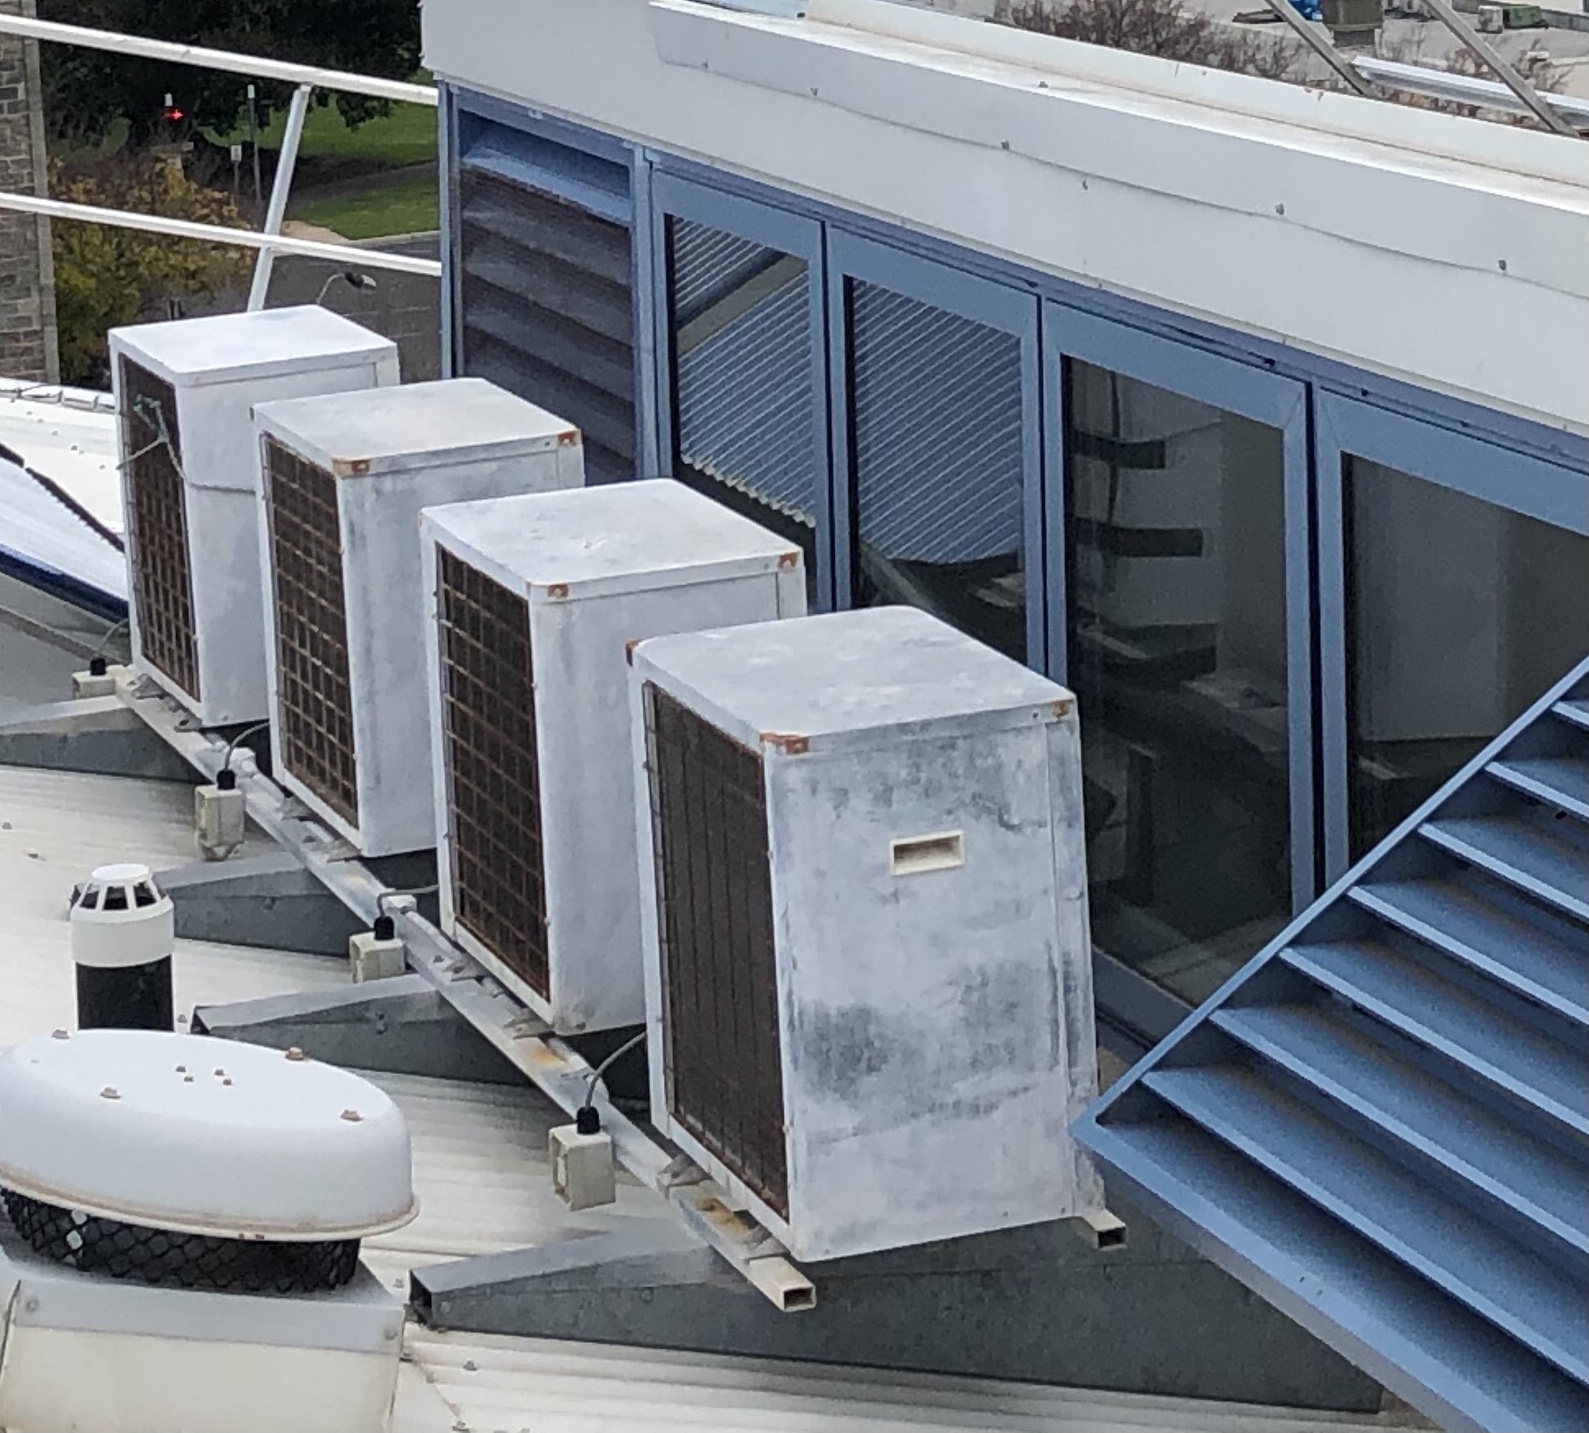 Quantum evaporator units on the roof